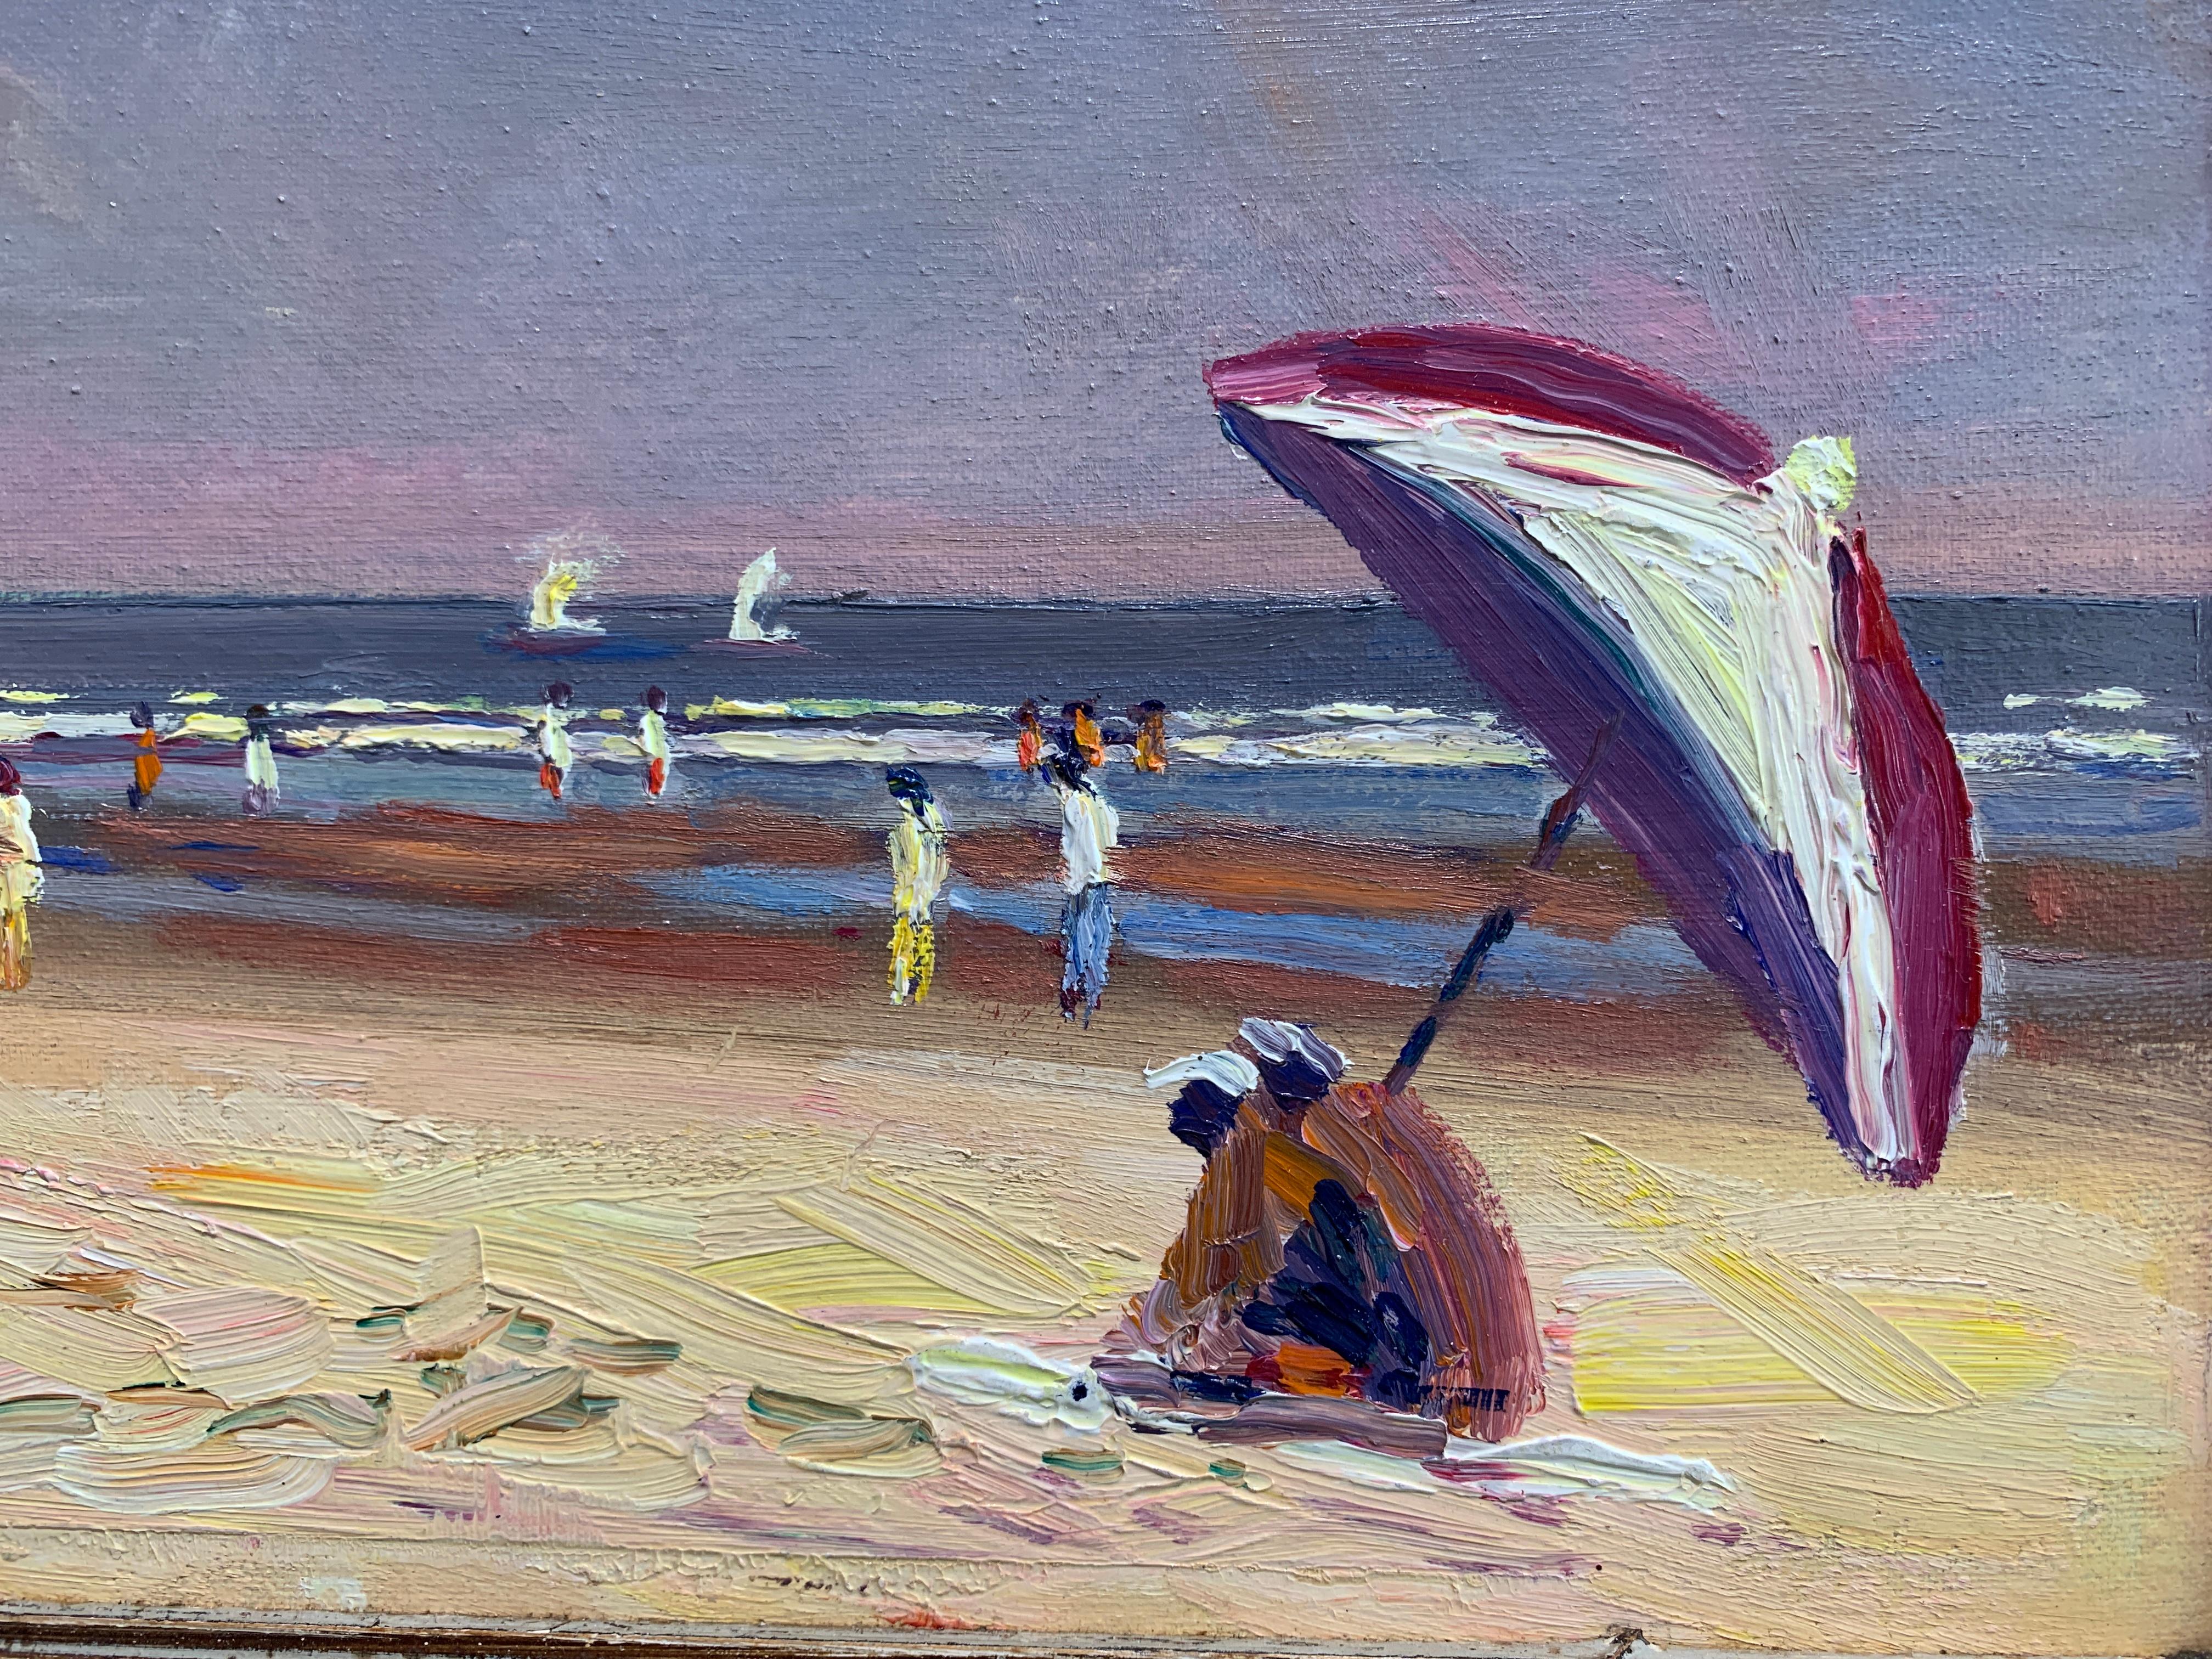 painted beach scene